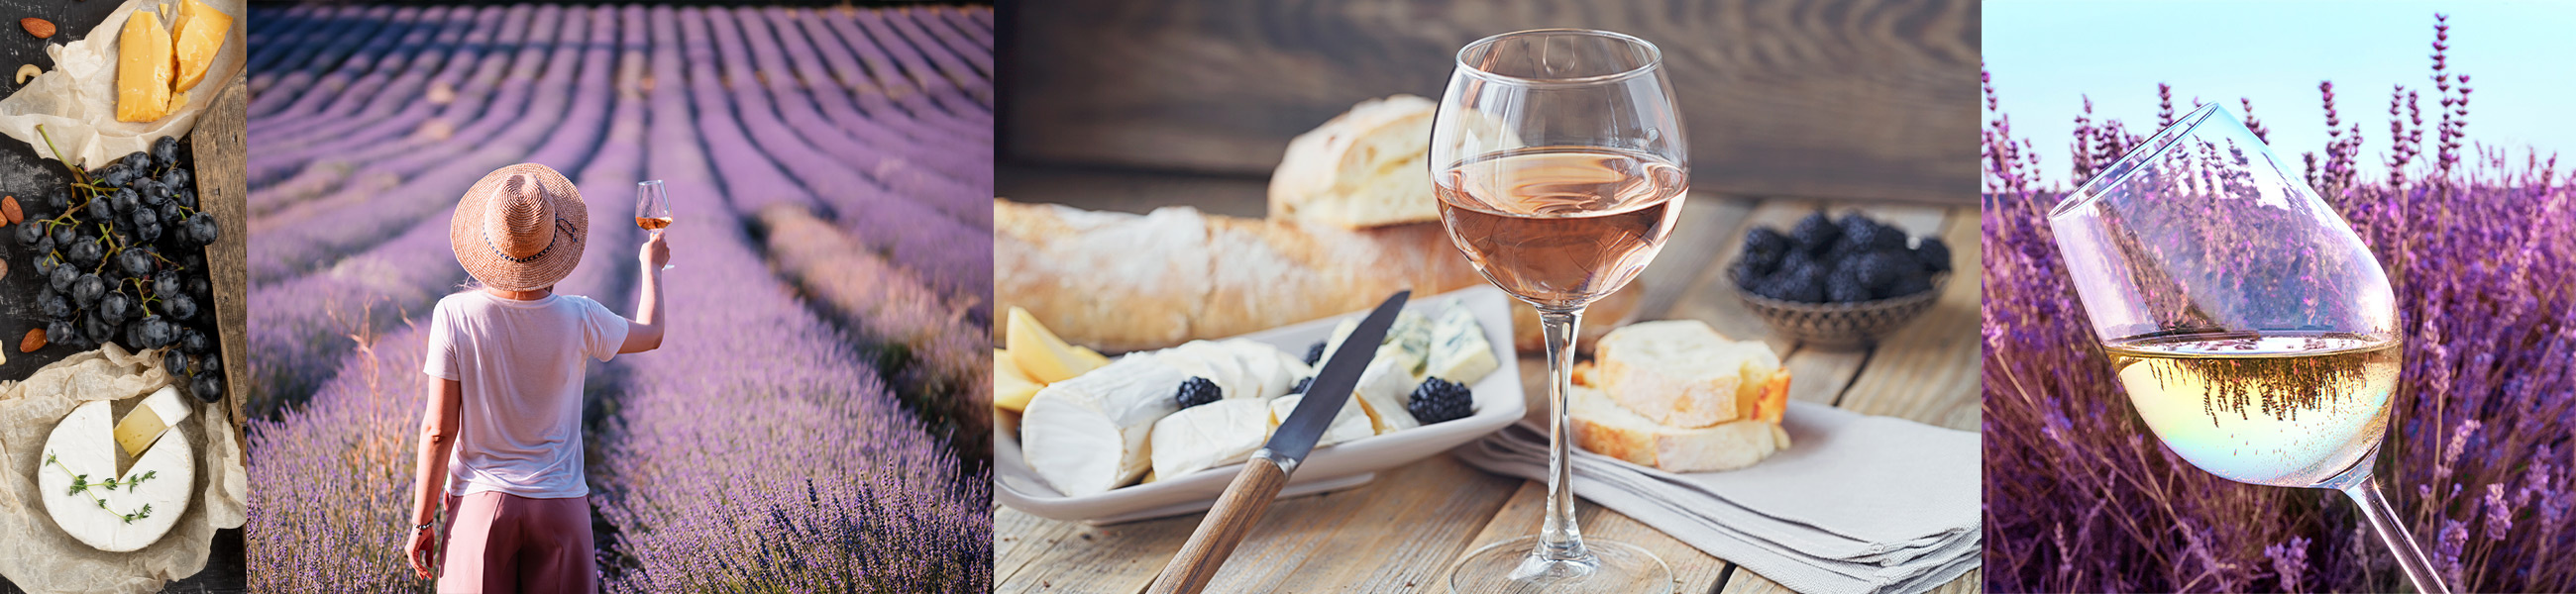 Elementi in comune tra vino francese e vino italiano